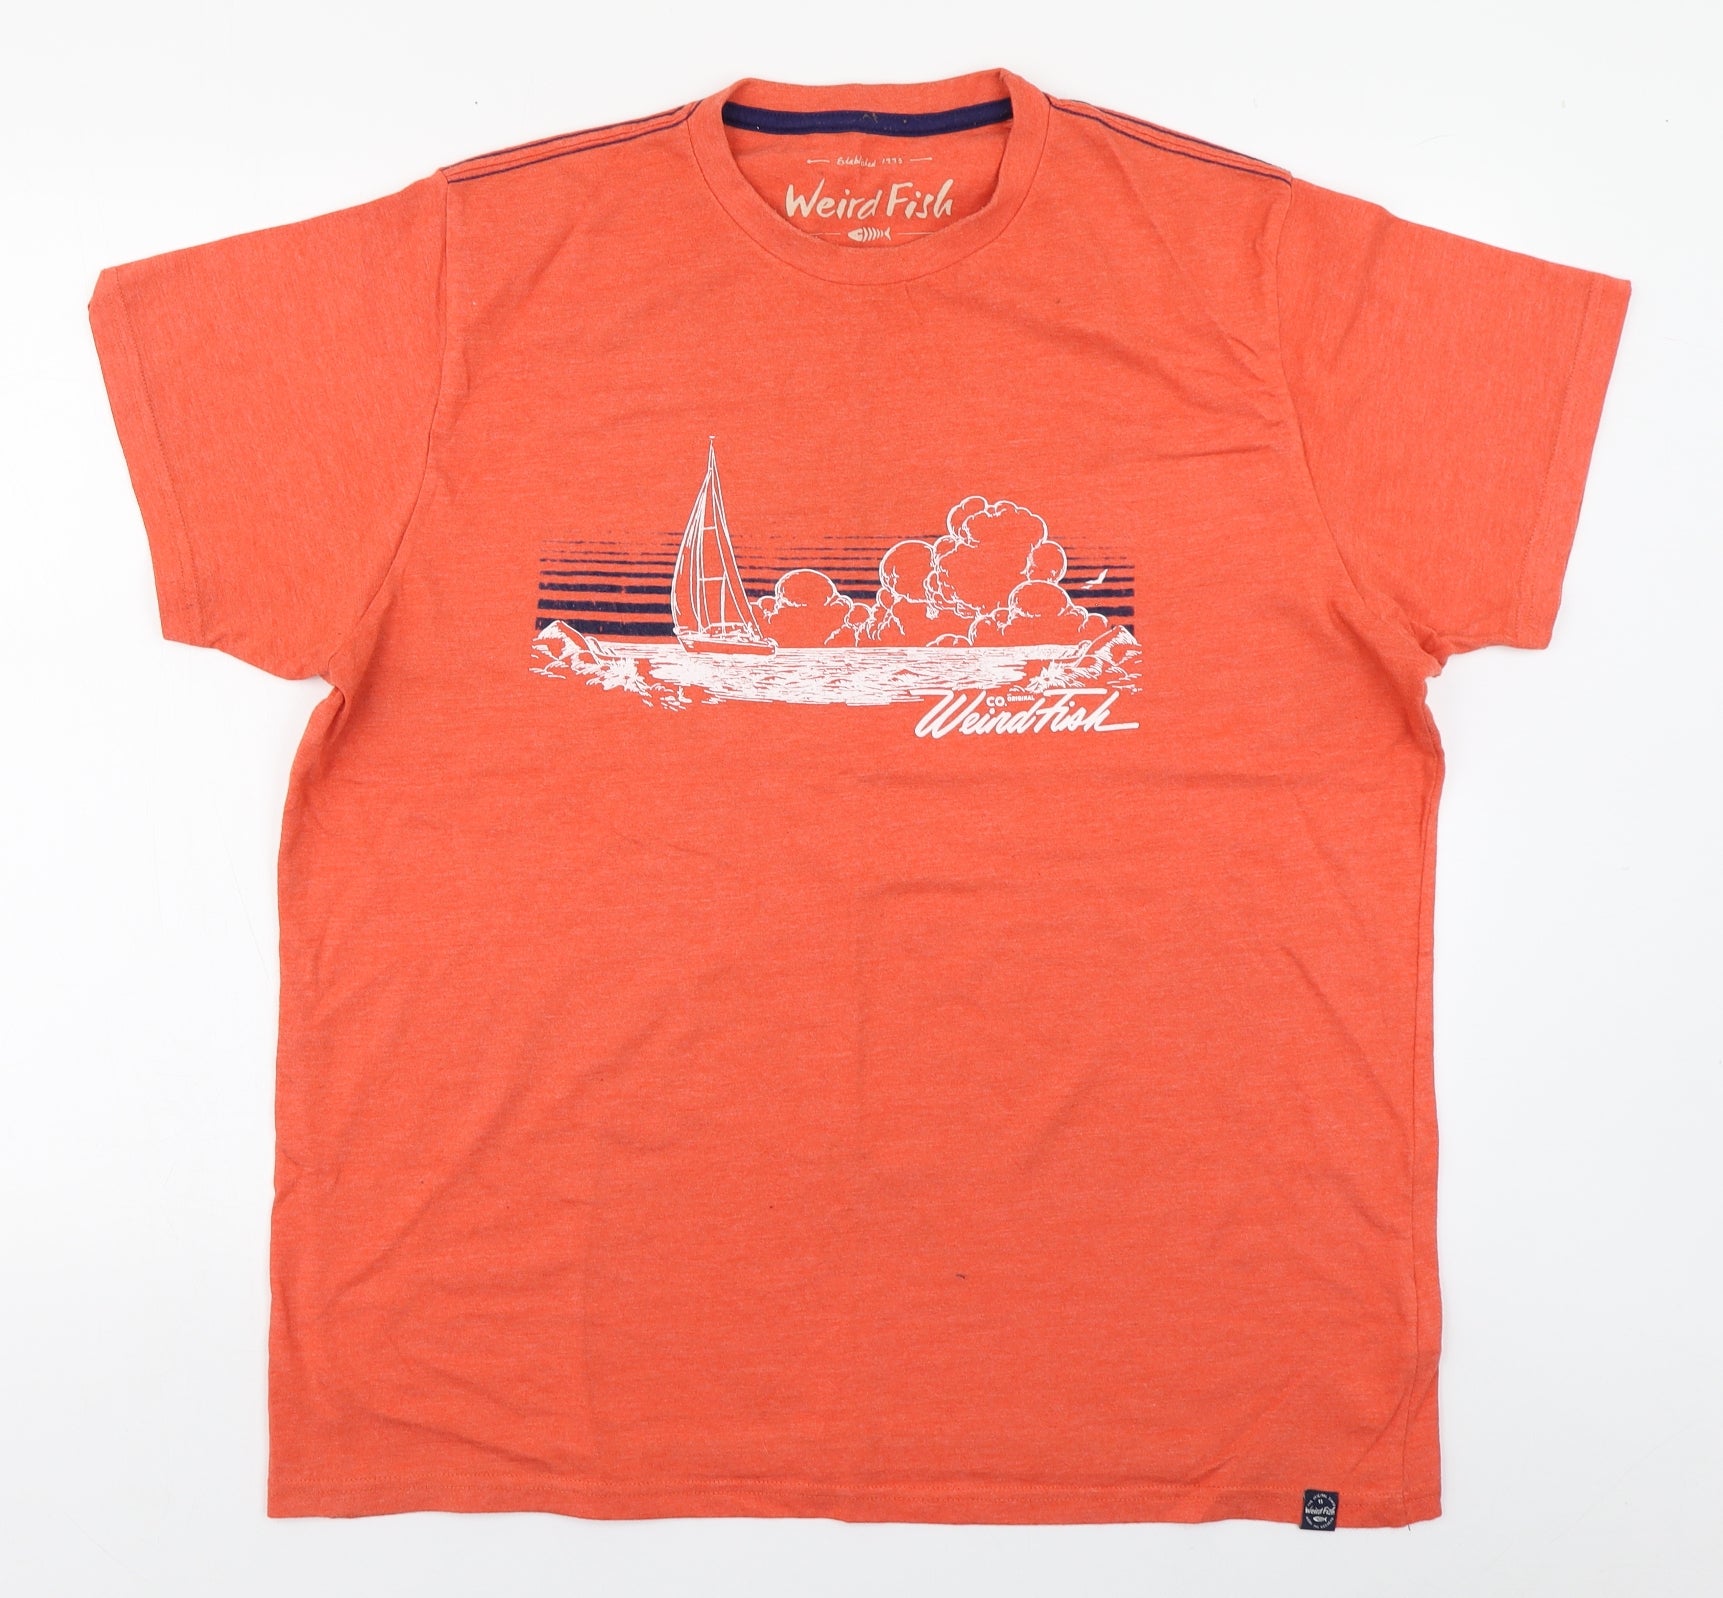 Weird Fish Mens Orange Cotton T-Shirt Size XL Round Neck – Preworn Ltd